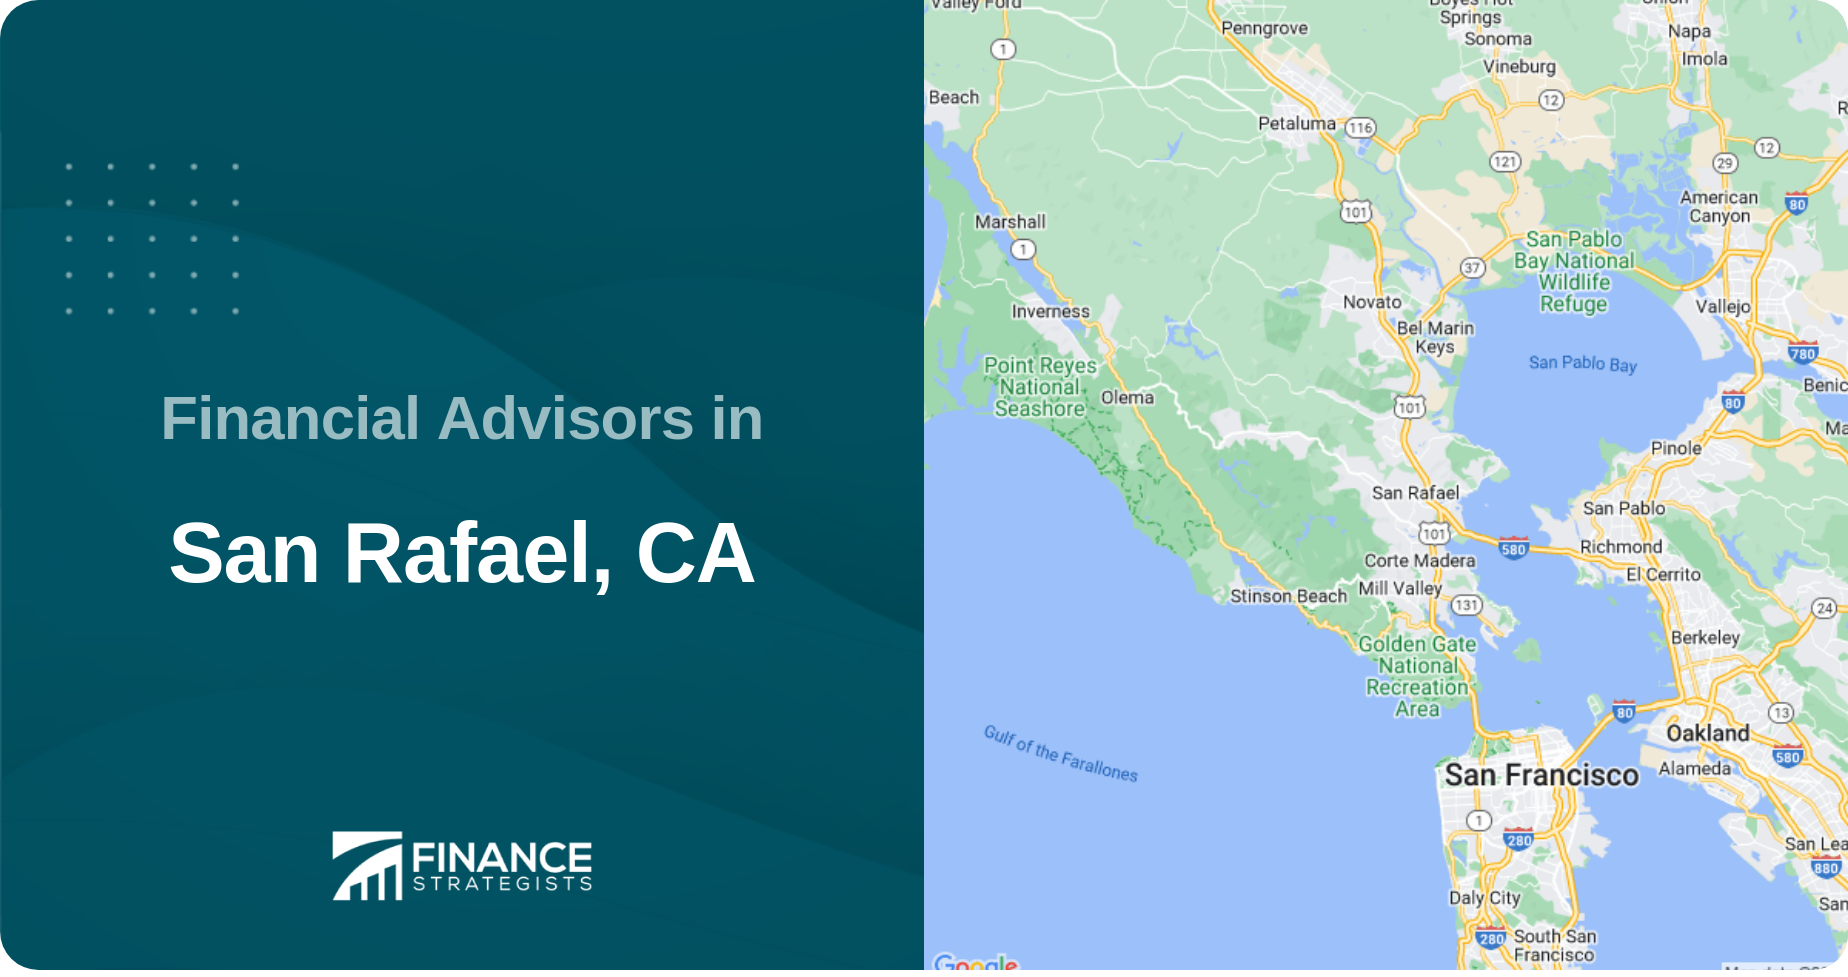 Financial Advisors in San Rafael, CA